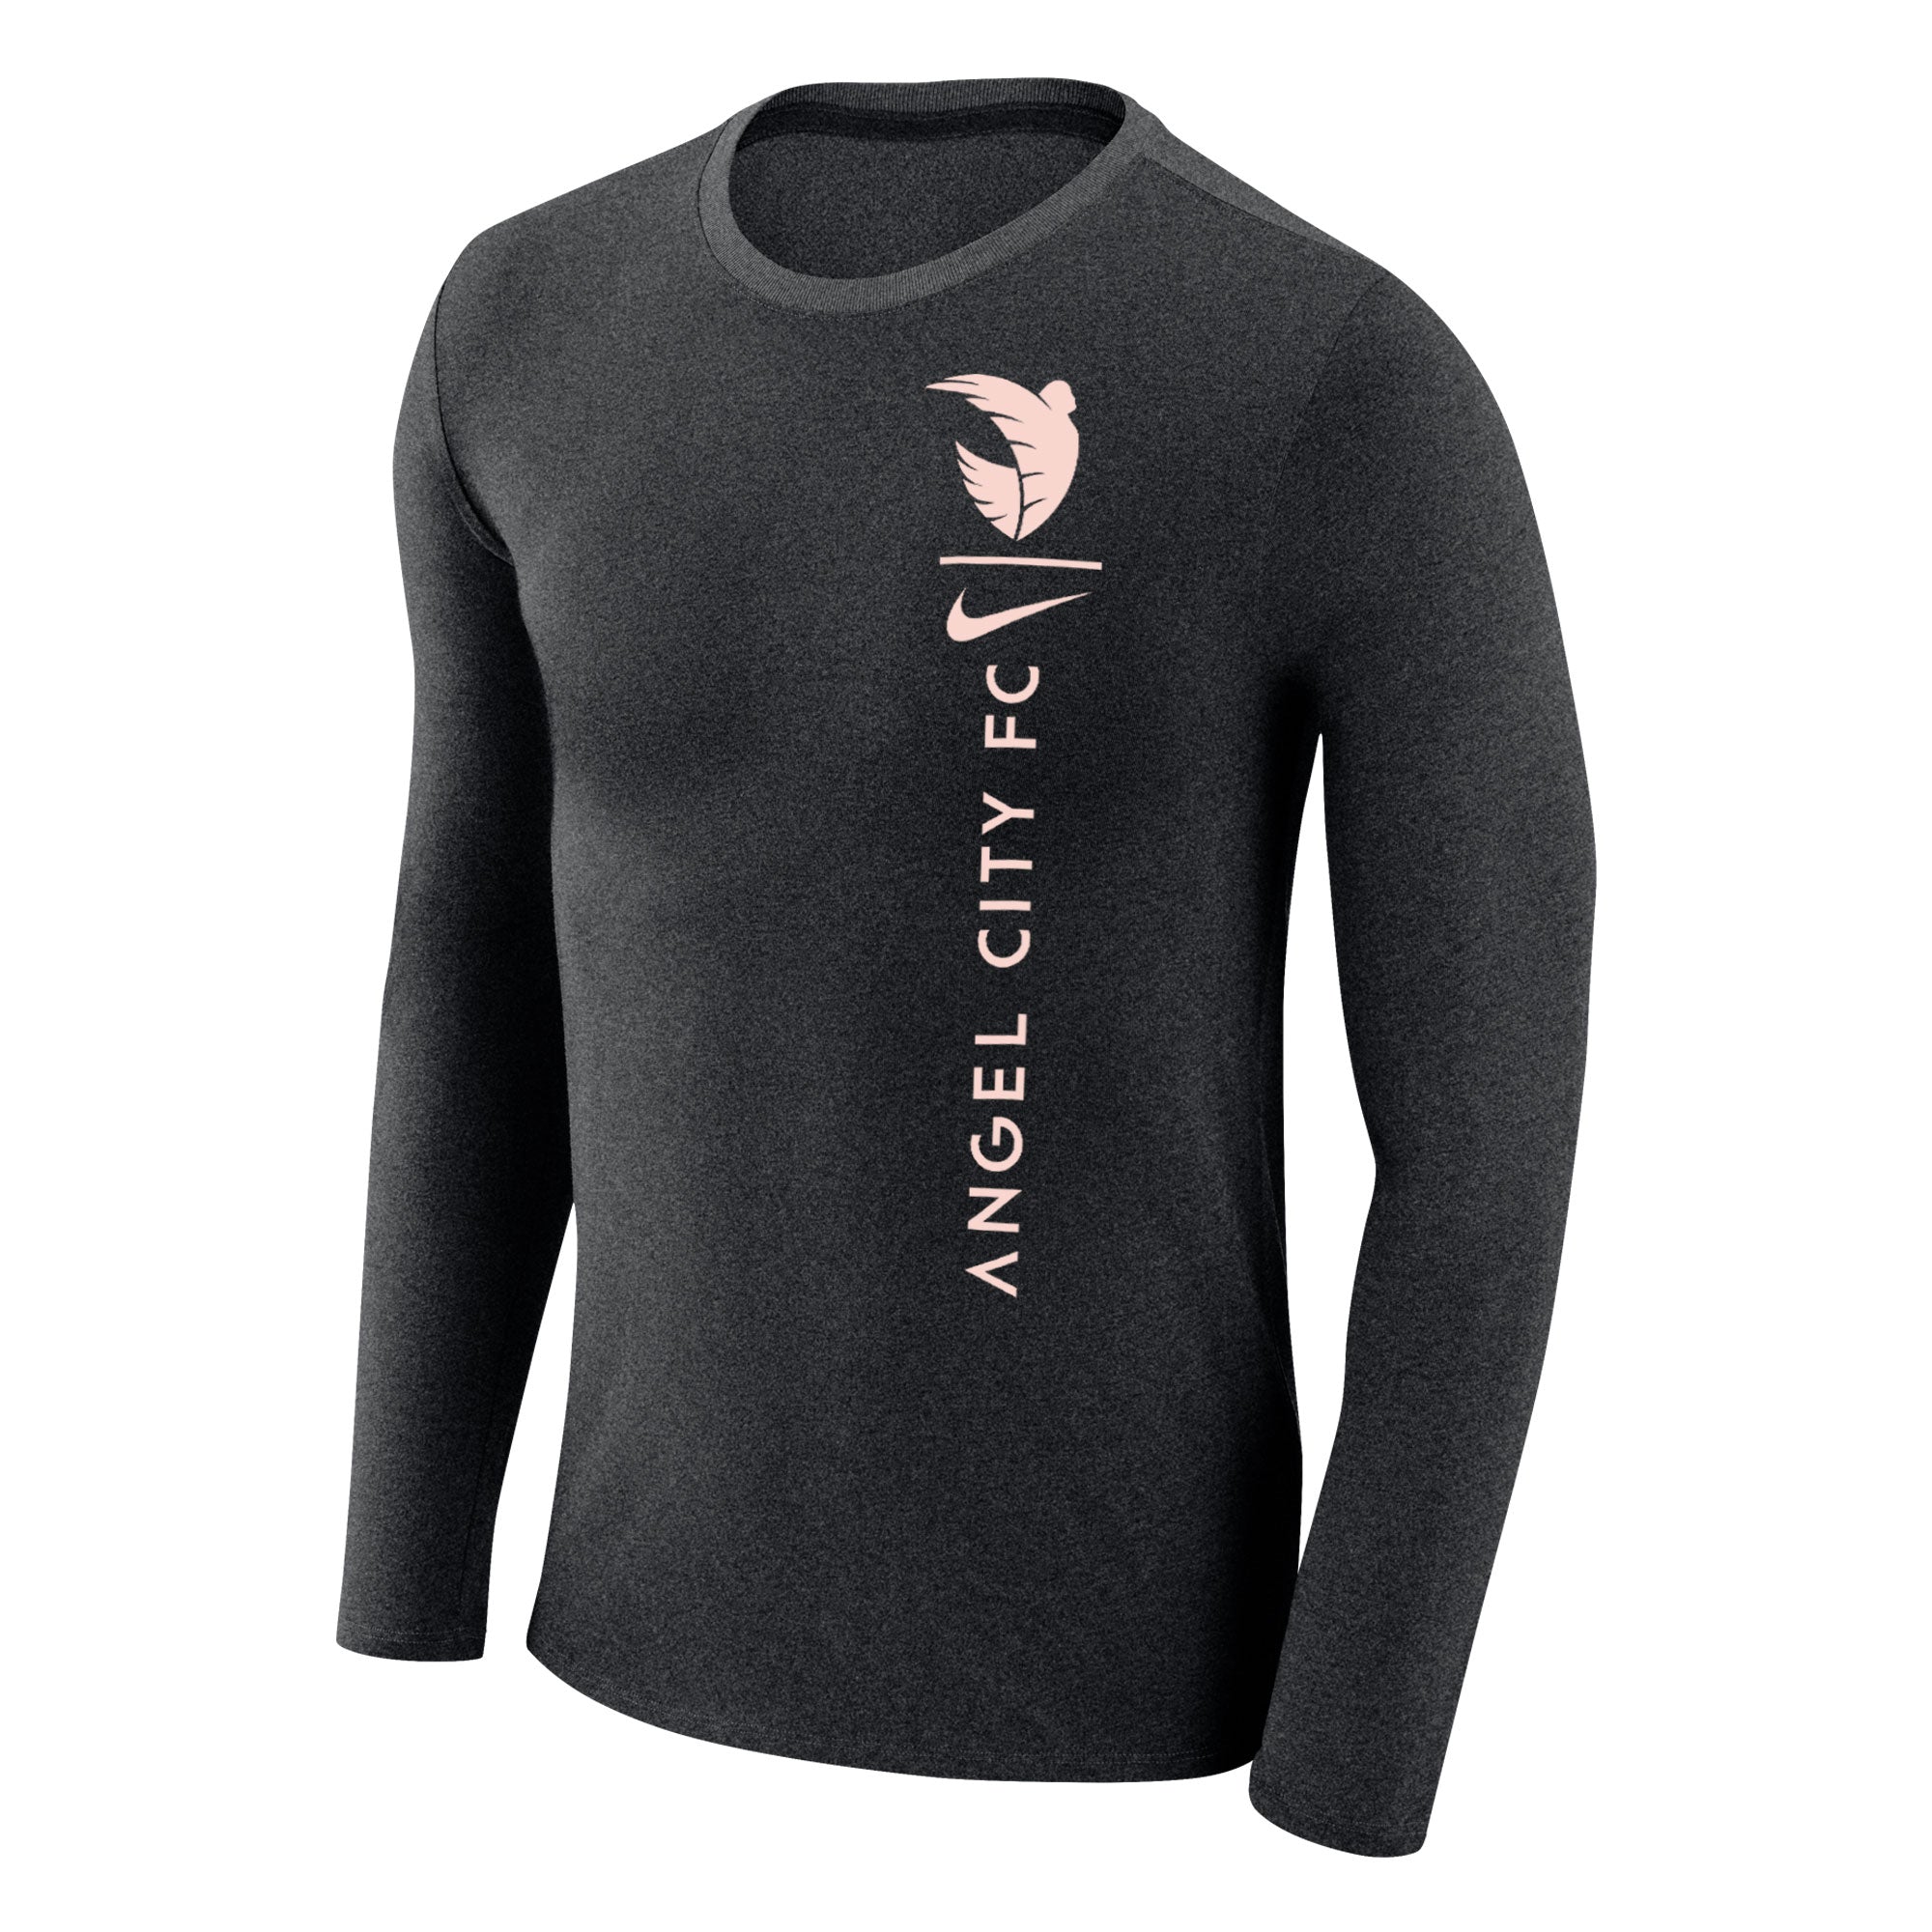 Angel City FC Nike Unisex Black Marled Long Sleeve Shirt